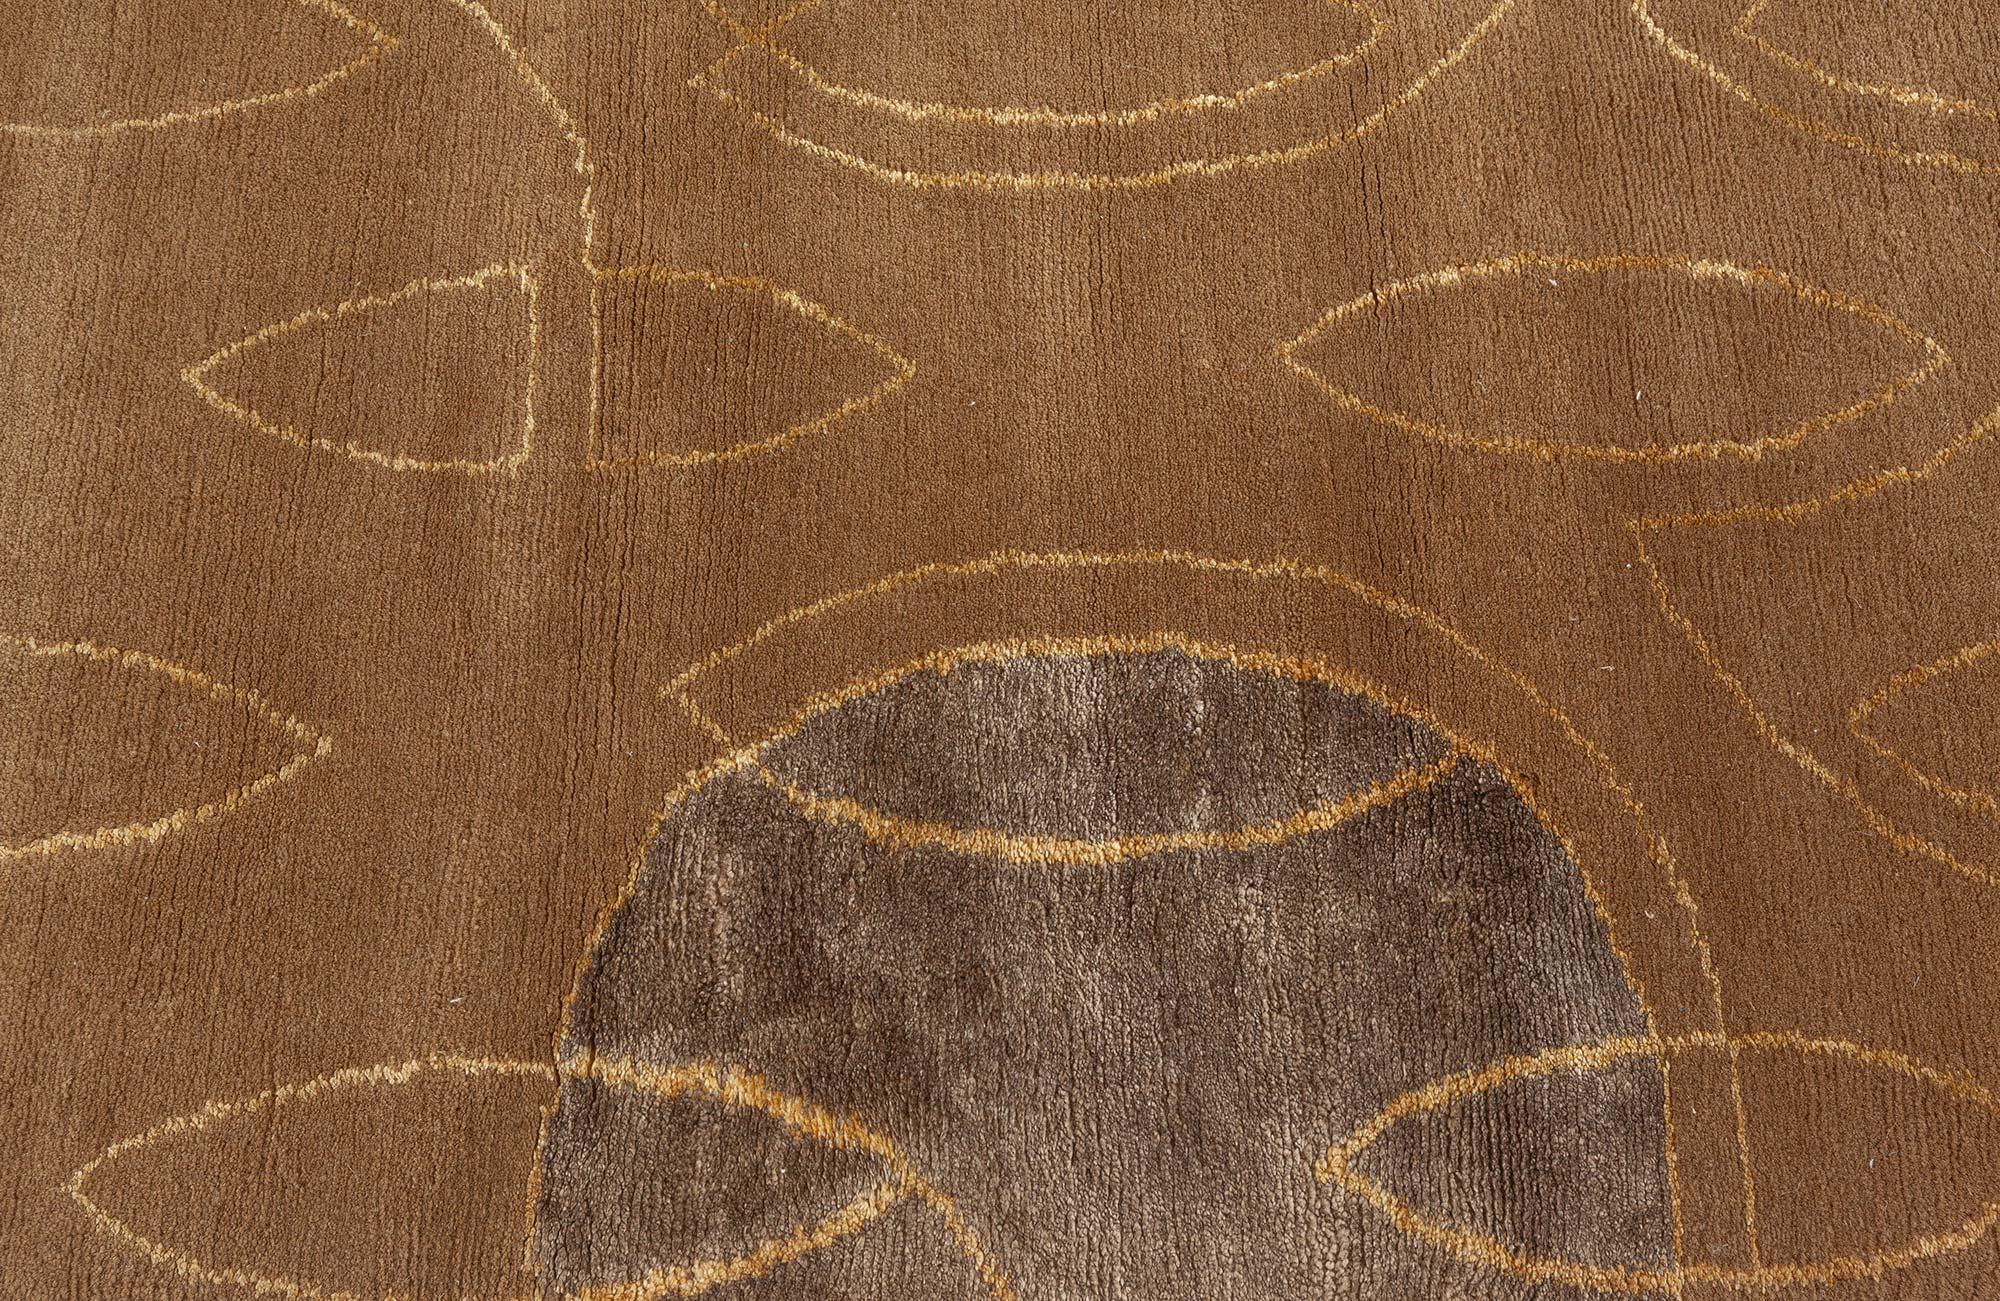 Wool Art Deco Inspired Tibetan Rug in Brown and Beige by Doris Leslie Blau For Sale